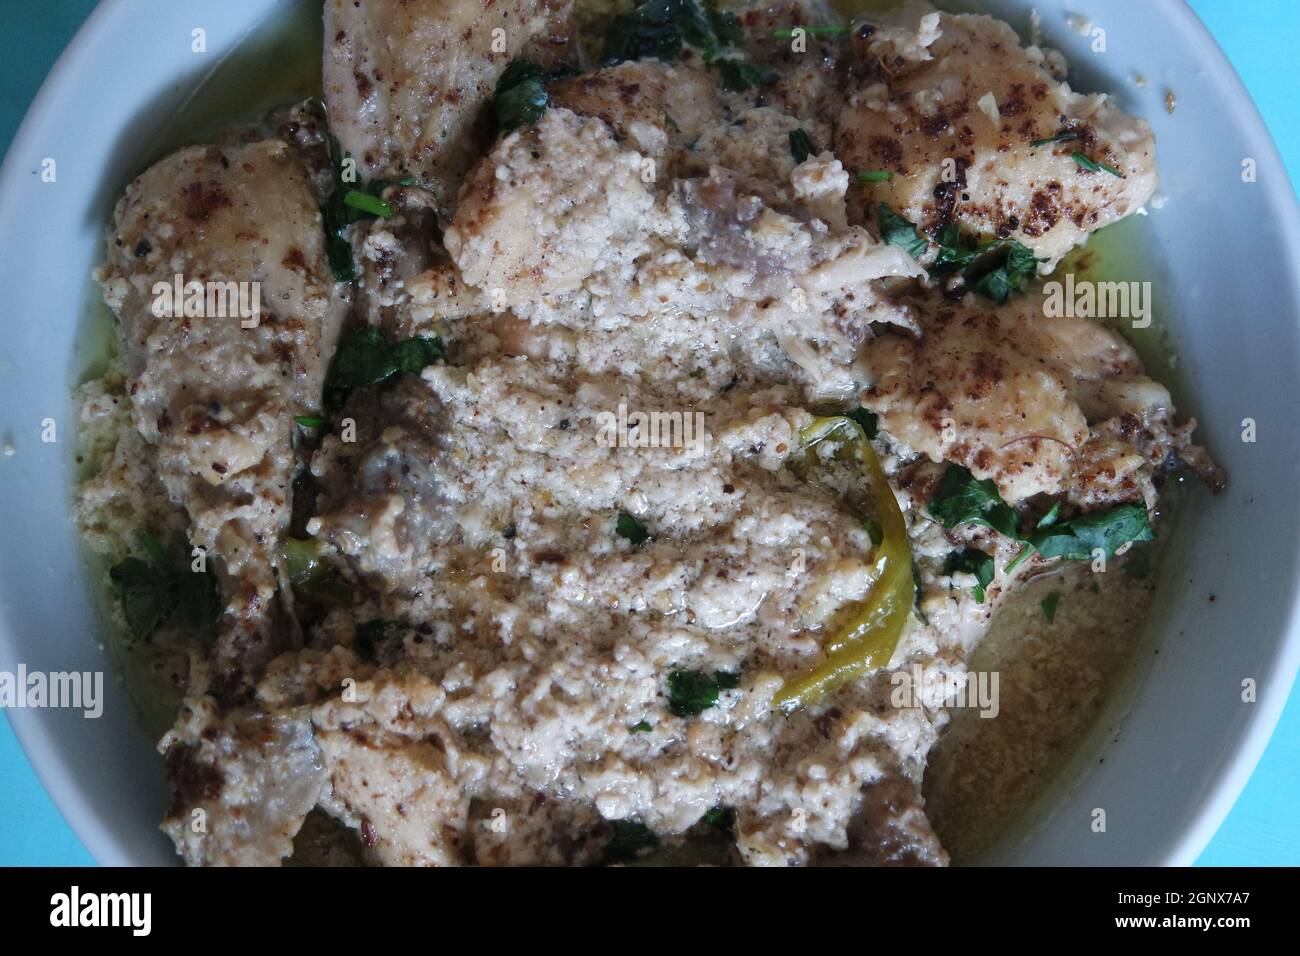 Qorma de poulet maison ou plat de qorma blanc. Plat traditionnel pour les fêtes et les cérémonies populaires dans les pays d'Asie du Sud comme le Pakistan, l'Inde Banque D'Images